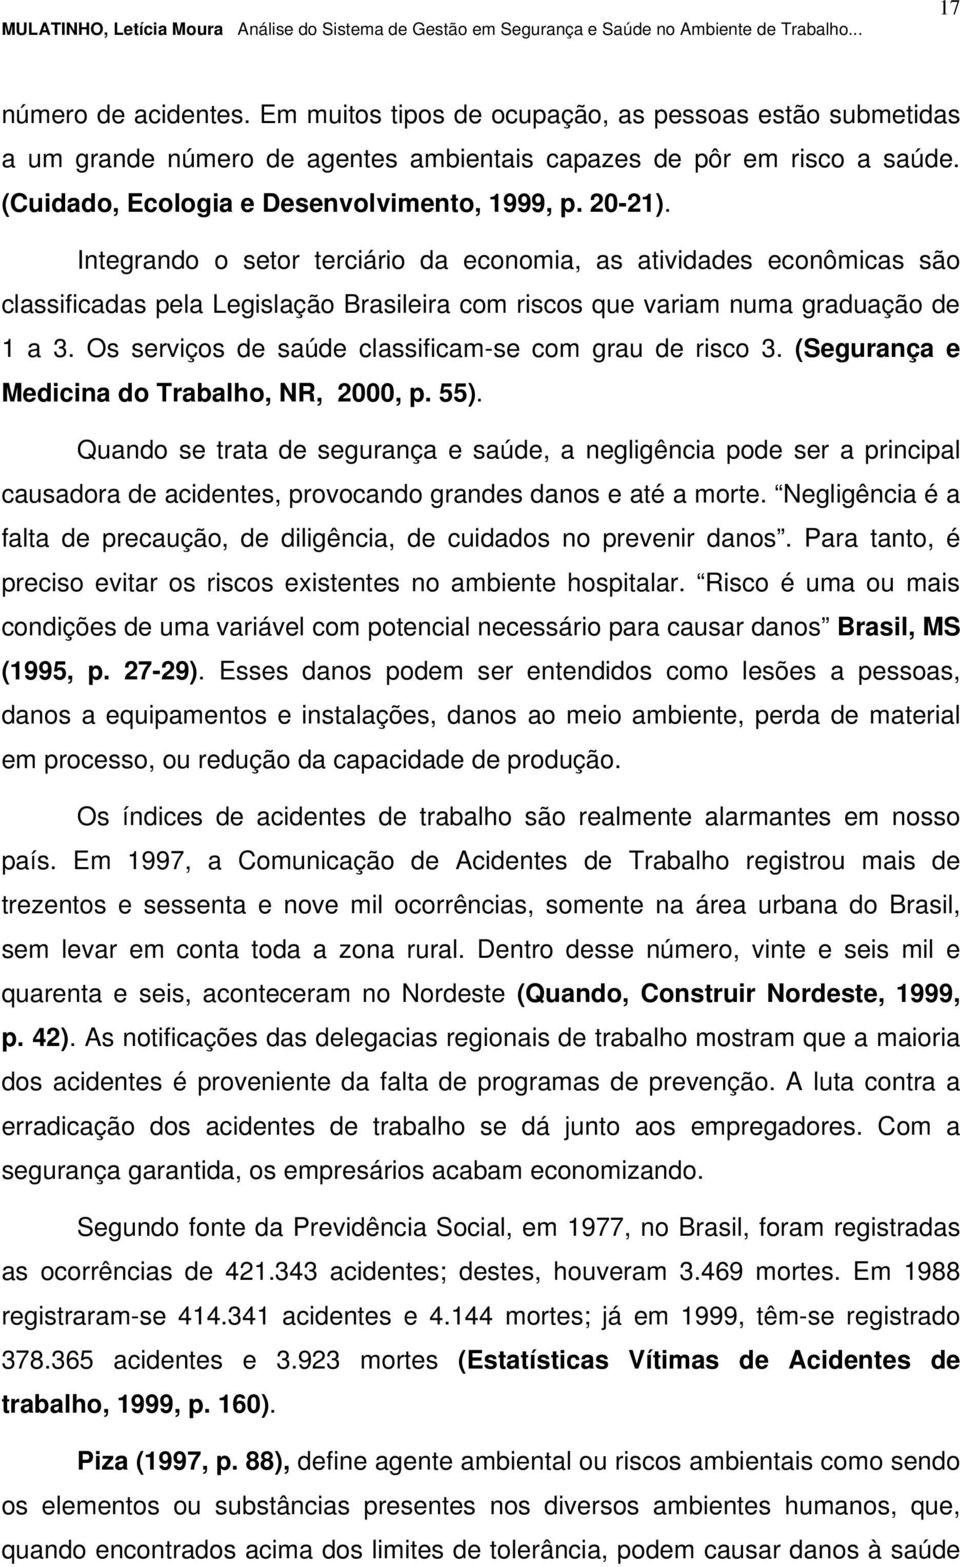 Integrando o setor terciário da economia, as atividades econômicas são classificadas pela Legislação Brasileira com riscos que variam numa graduação de 1 a 3.